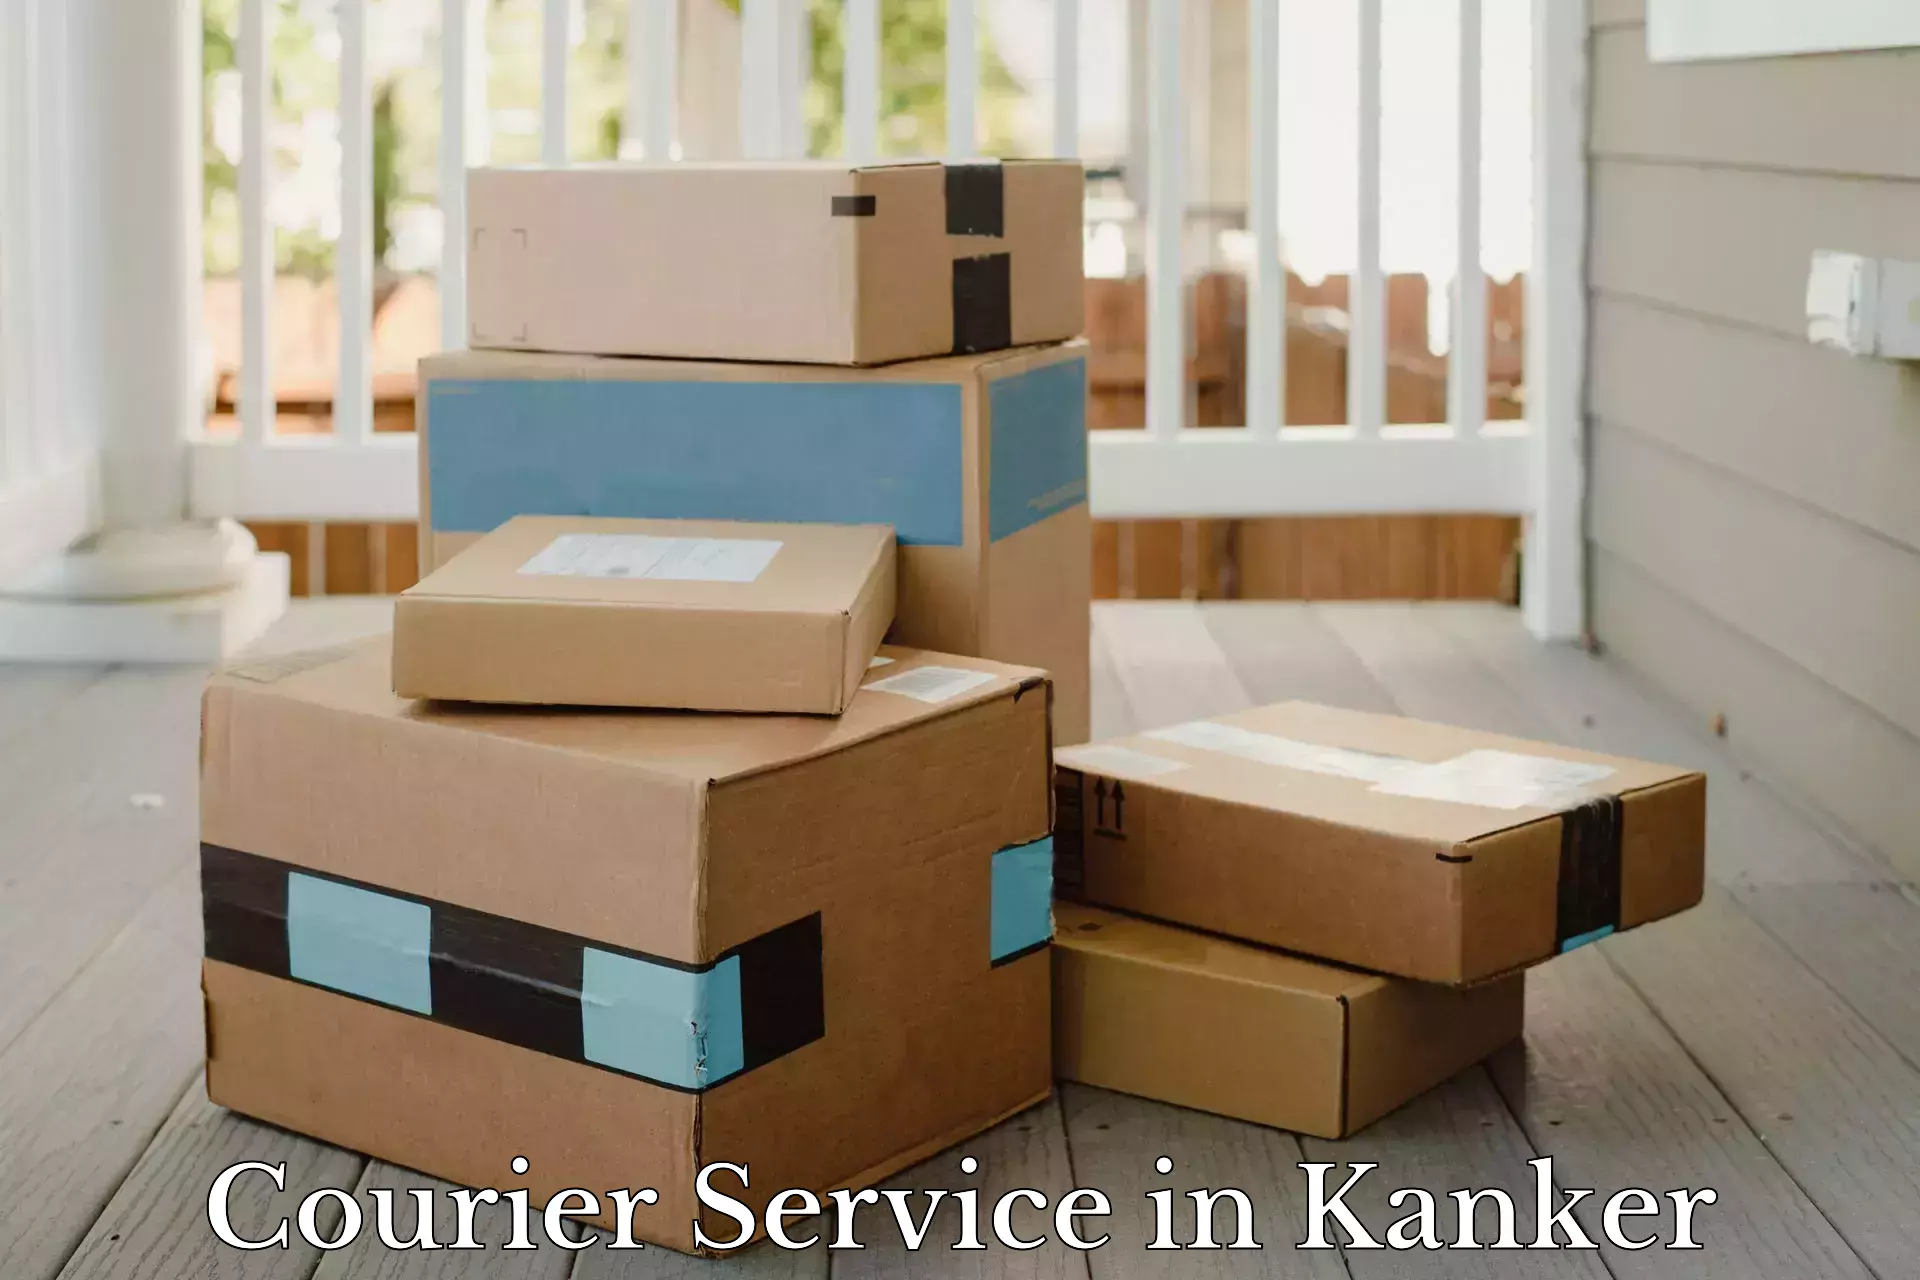 Smart parcel solutions in Kanker